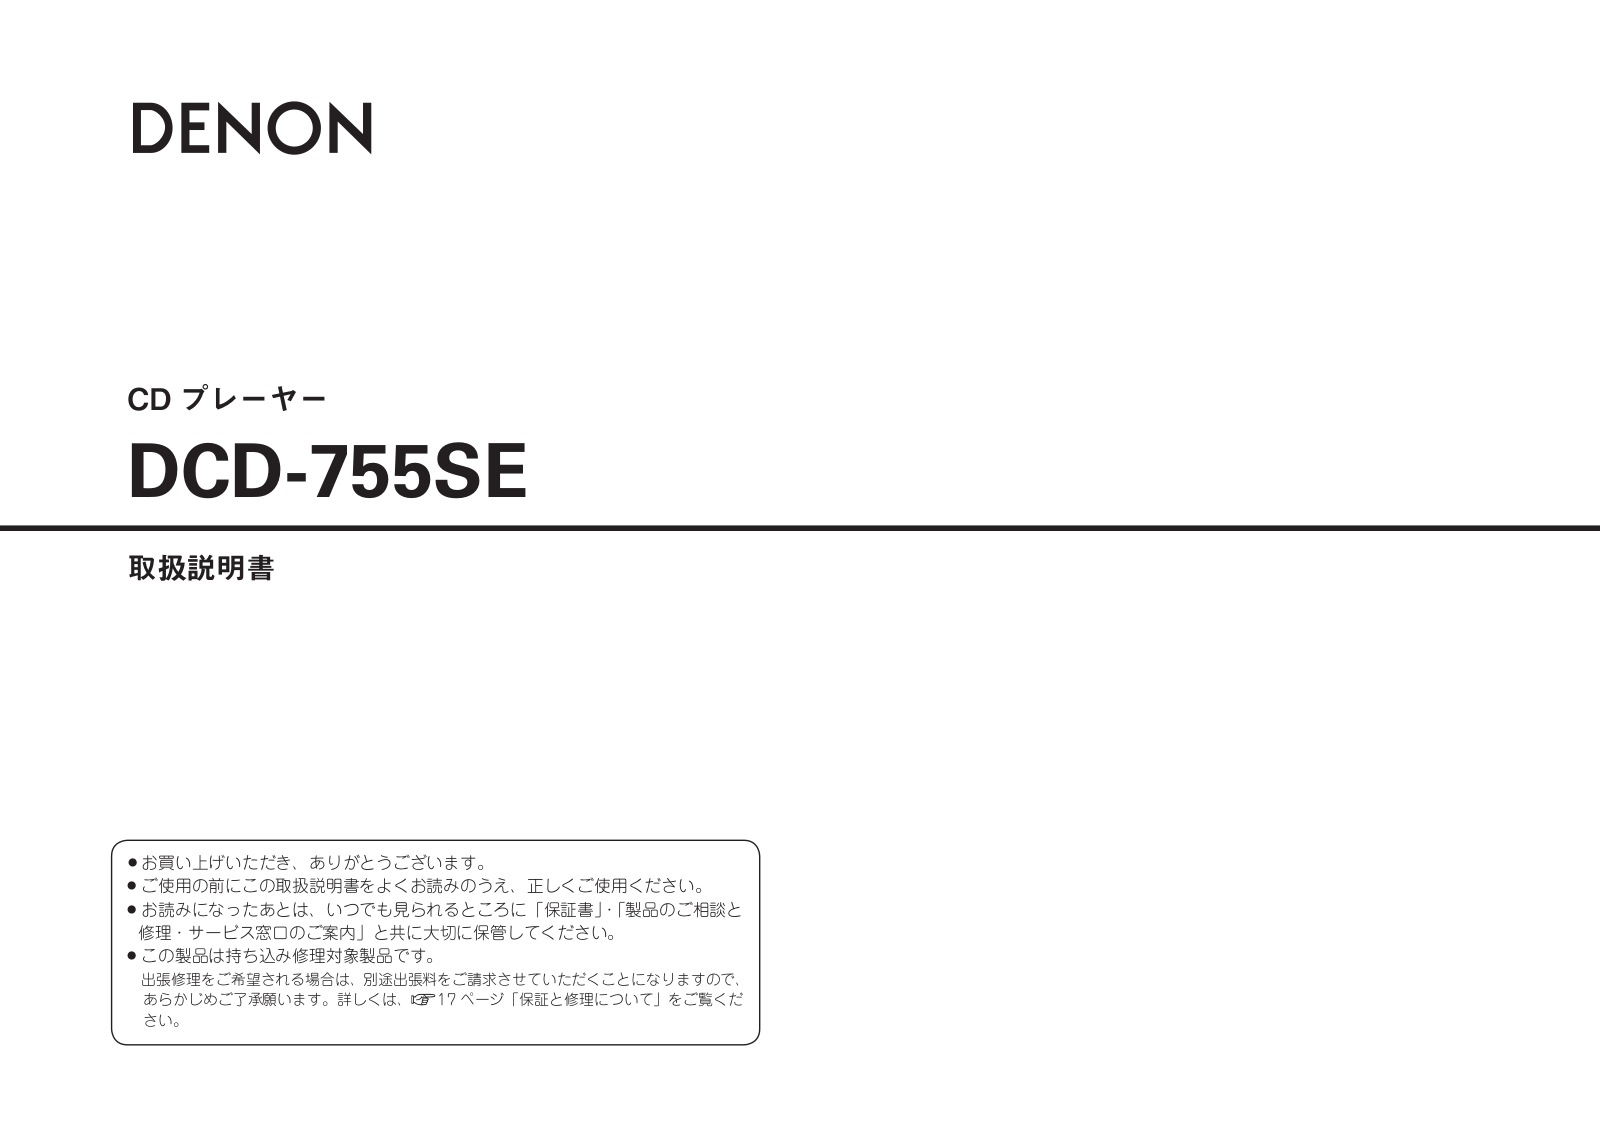 Denon DCD-755SE Owner's Manual